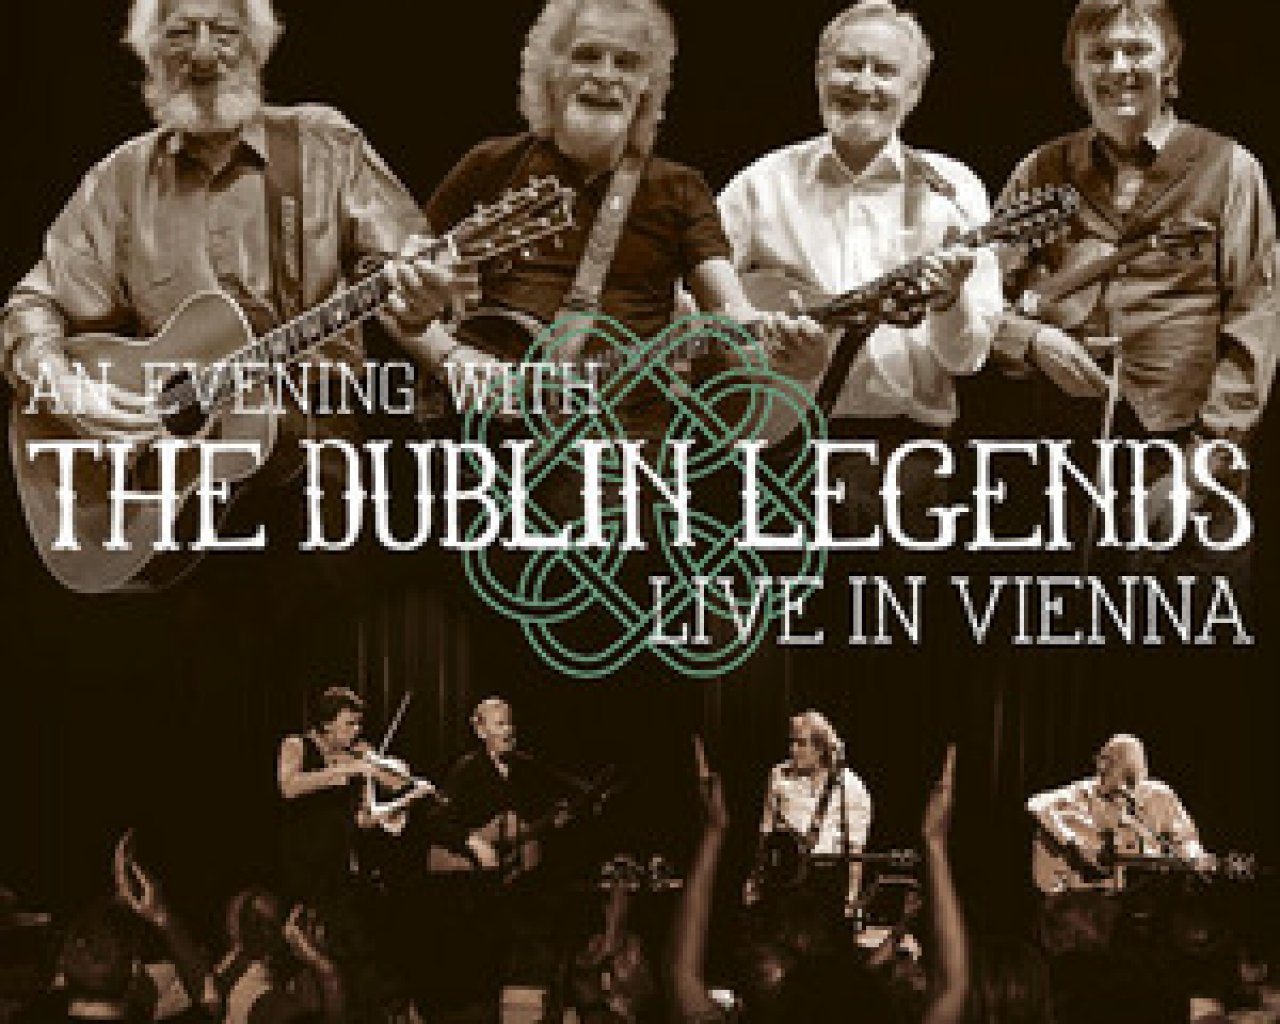 The Dublin Legends